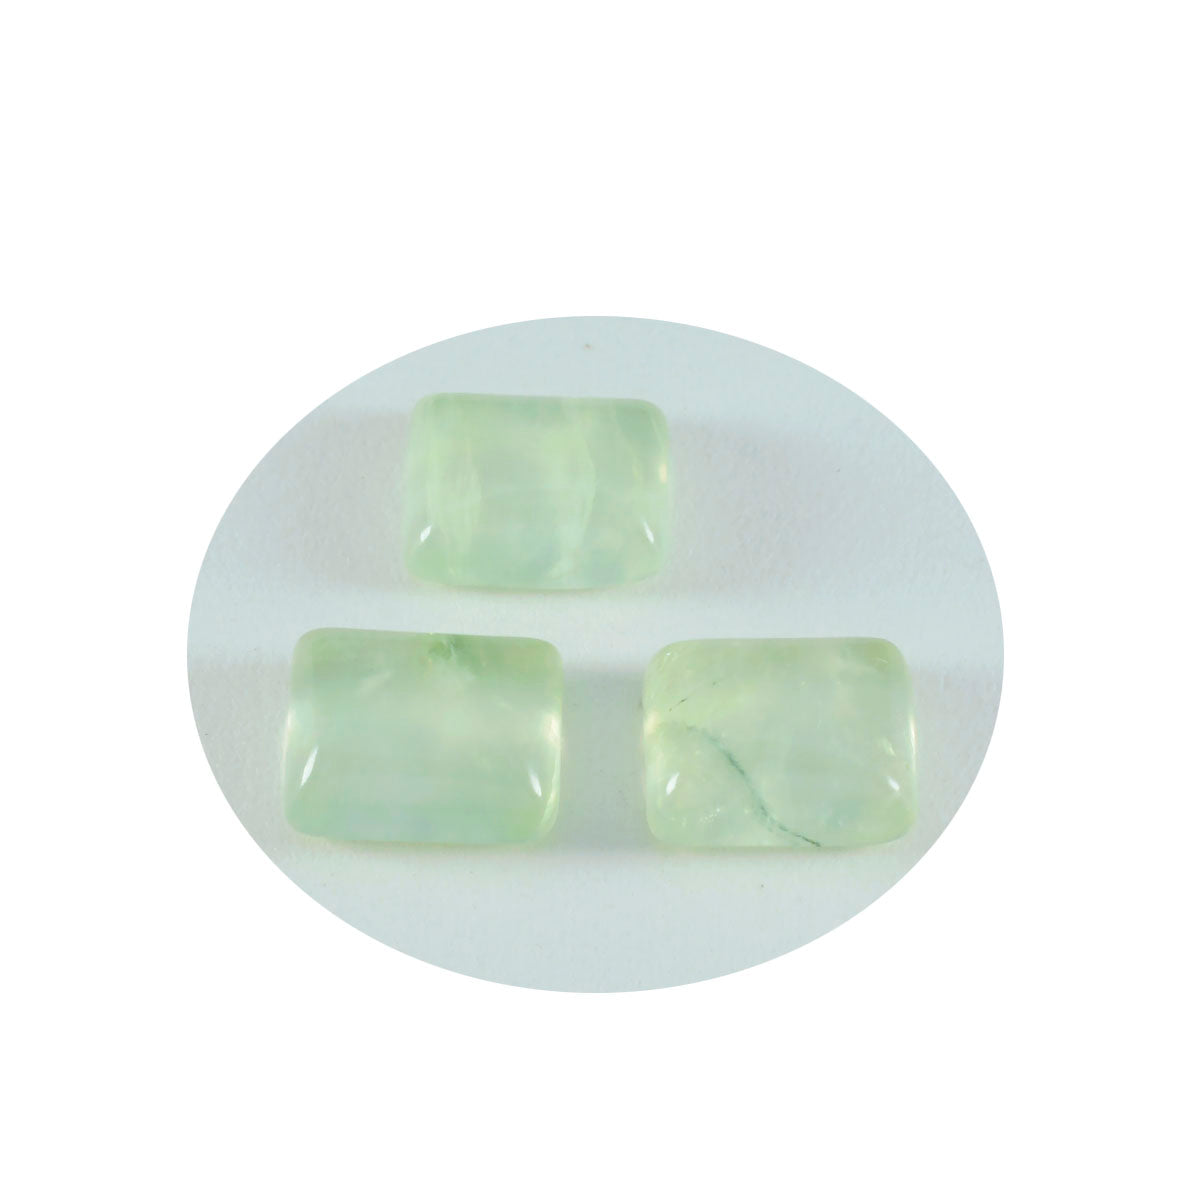 riyogems 1pz cabochon in prehnite verde 9x11 mm forma ottagonale pietra di qualità a+1